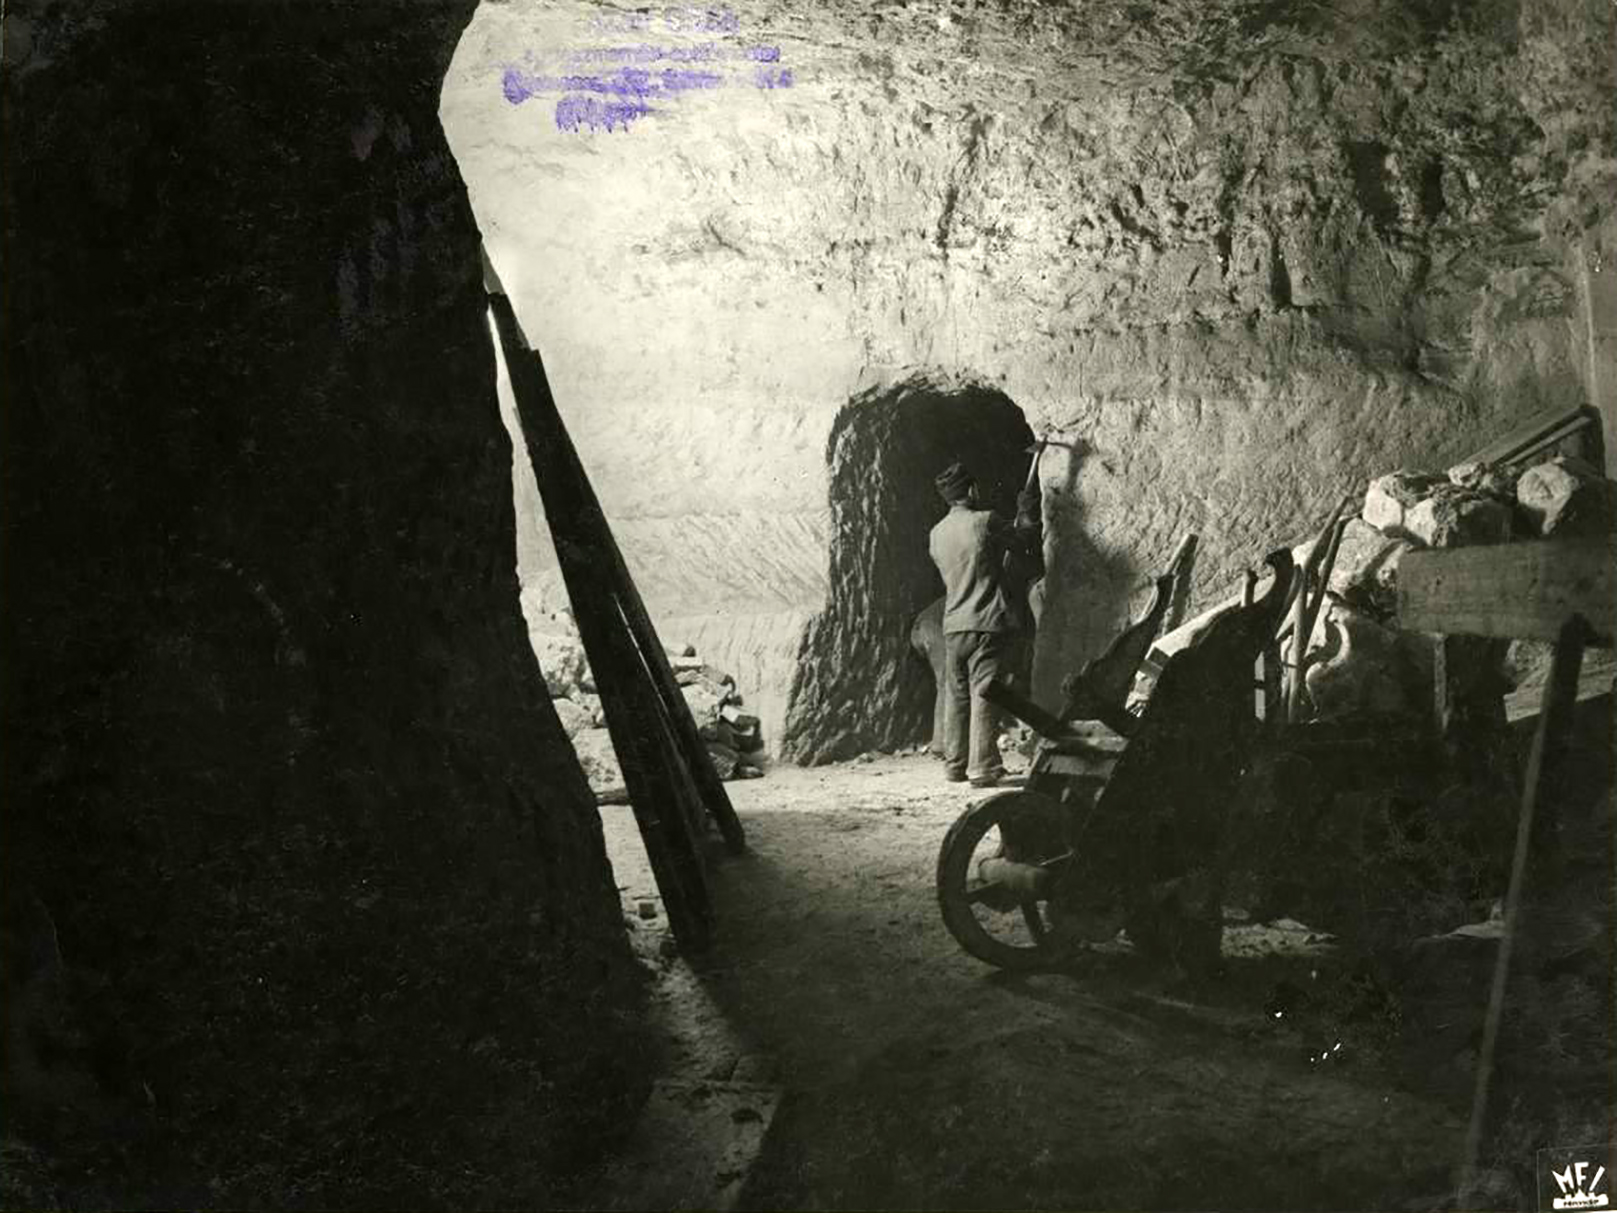 A budai Várnegyed alatti barlangrendszer északi és nyugati részének átépítése óvóhellyé, bombabiztos bunkerré. (Fotó: Magyar Filmiroda) 